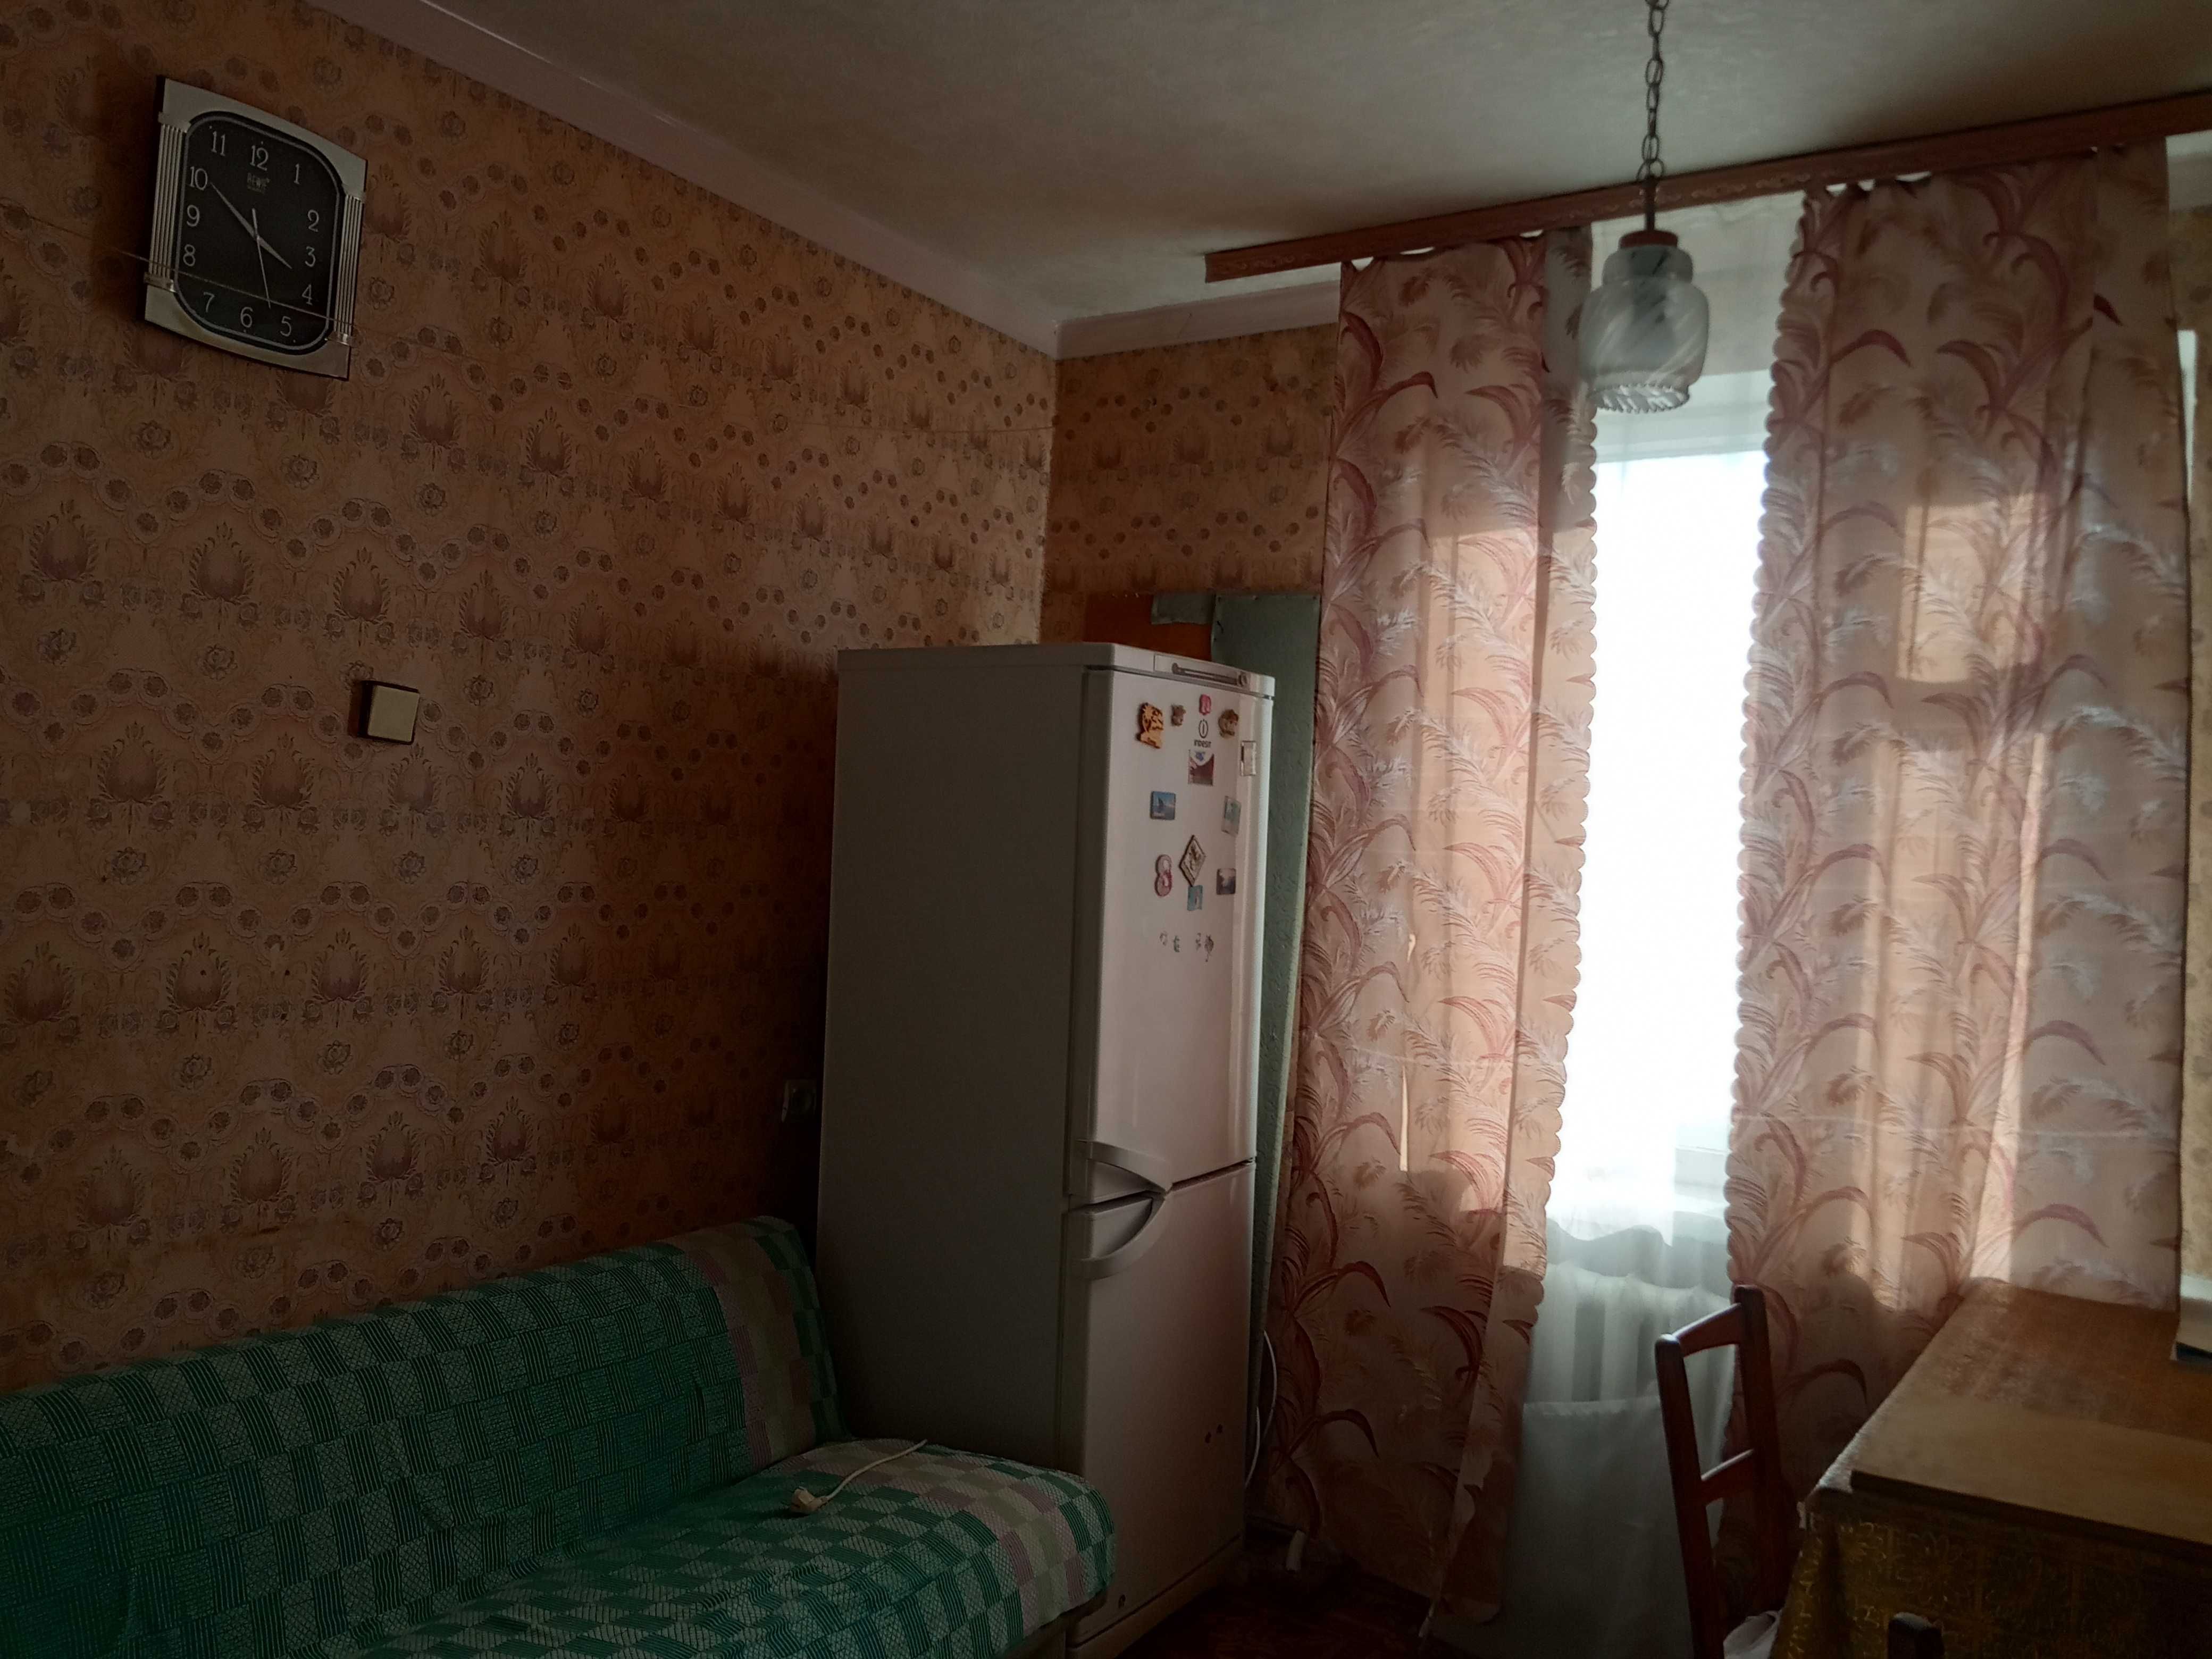 Продам однокомнатную квартиру в г. Харькове.